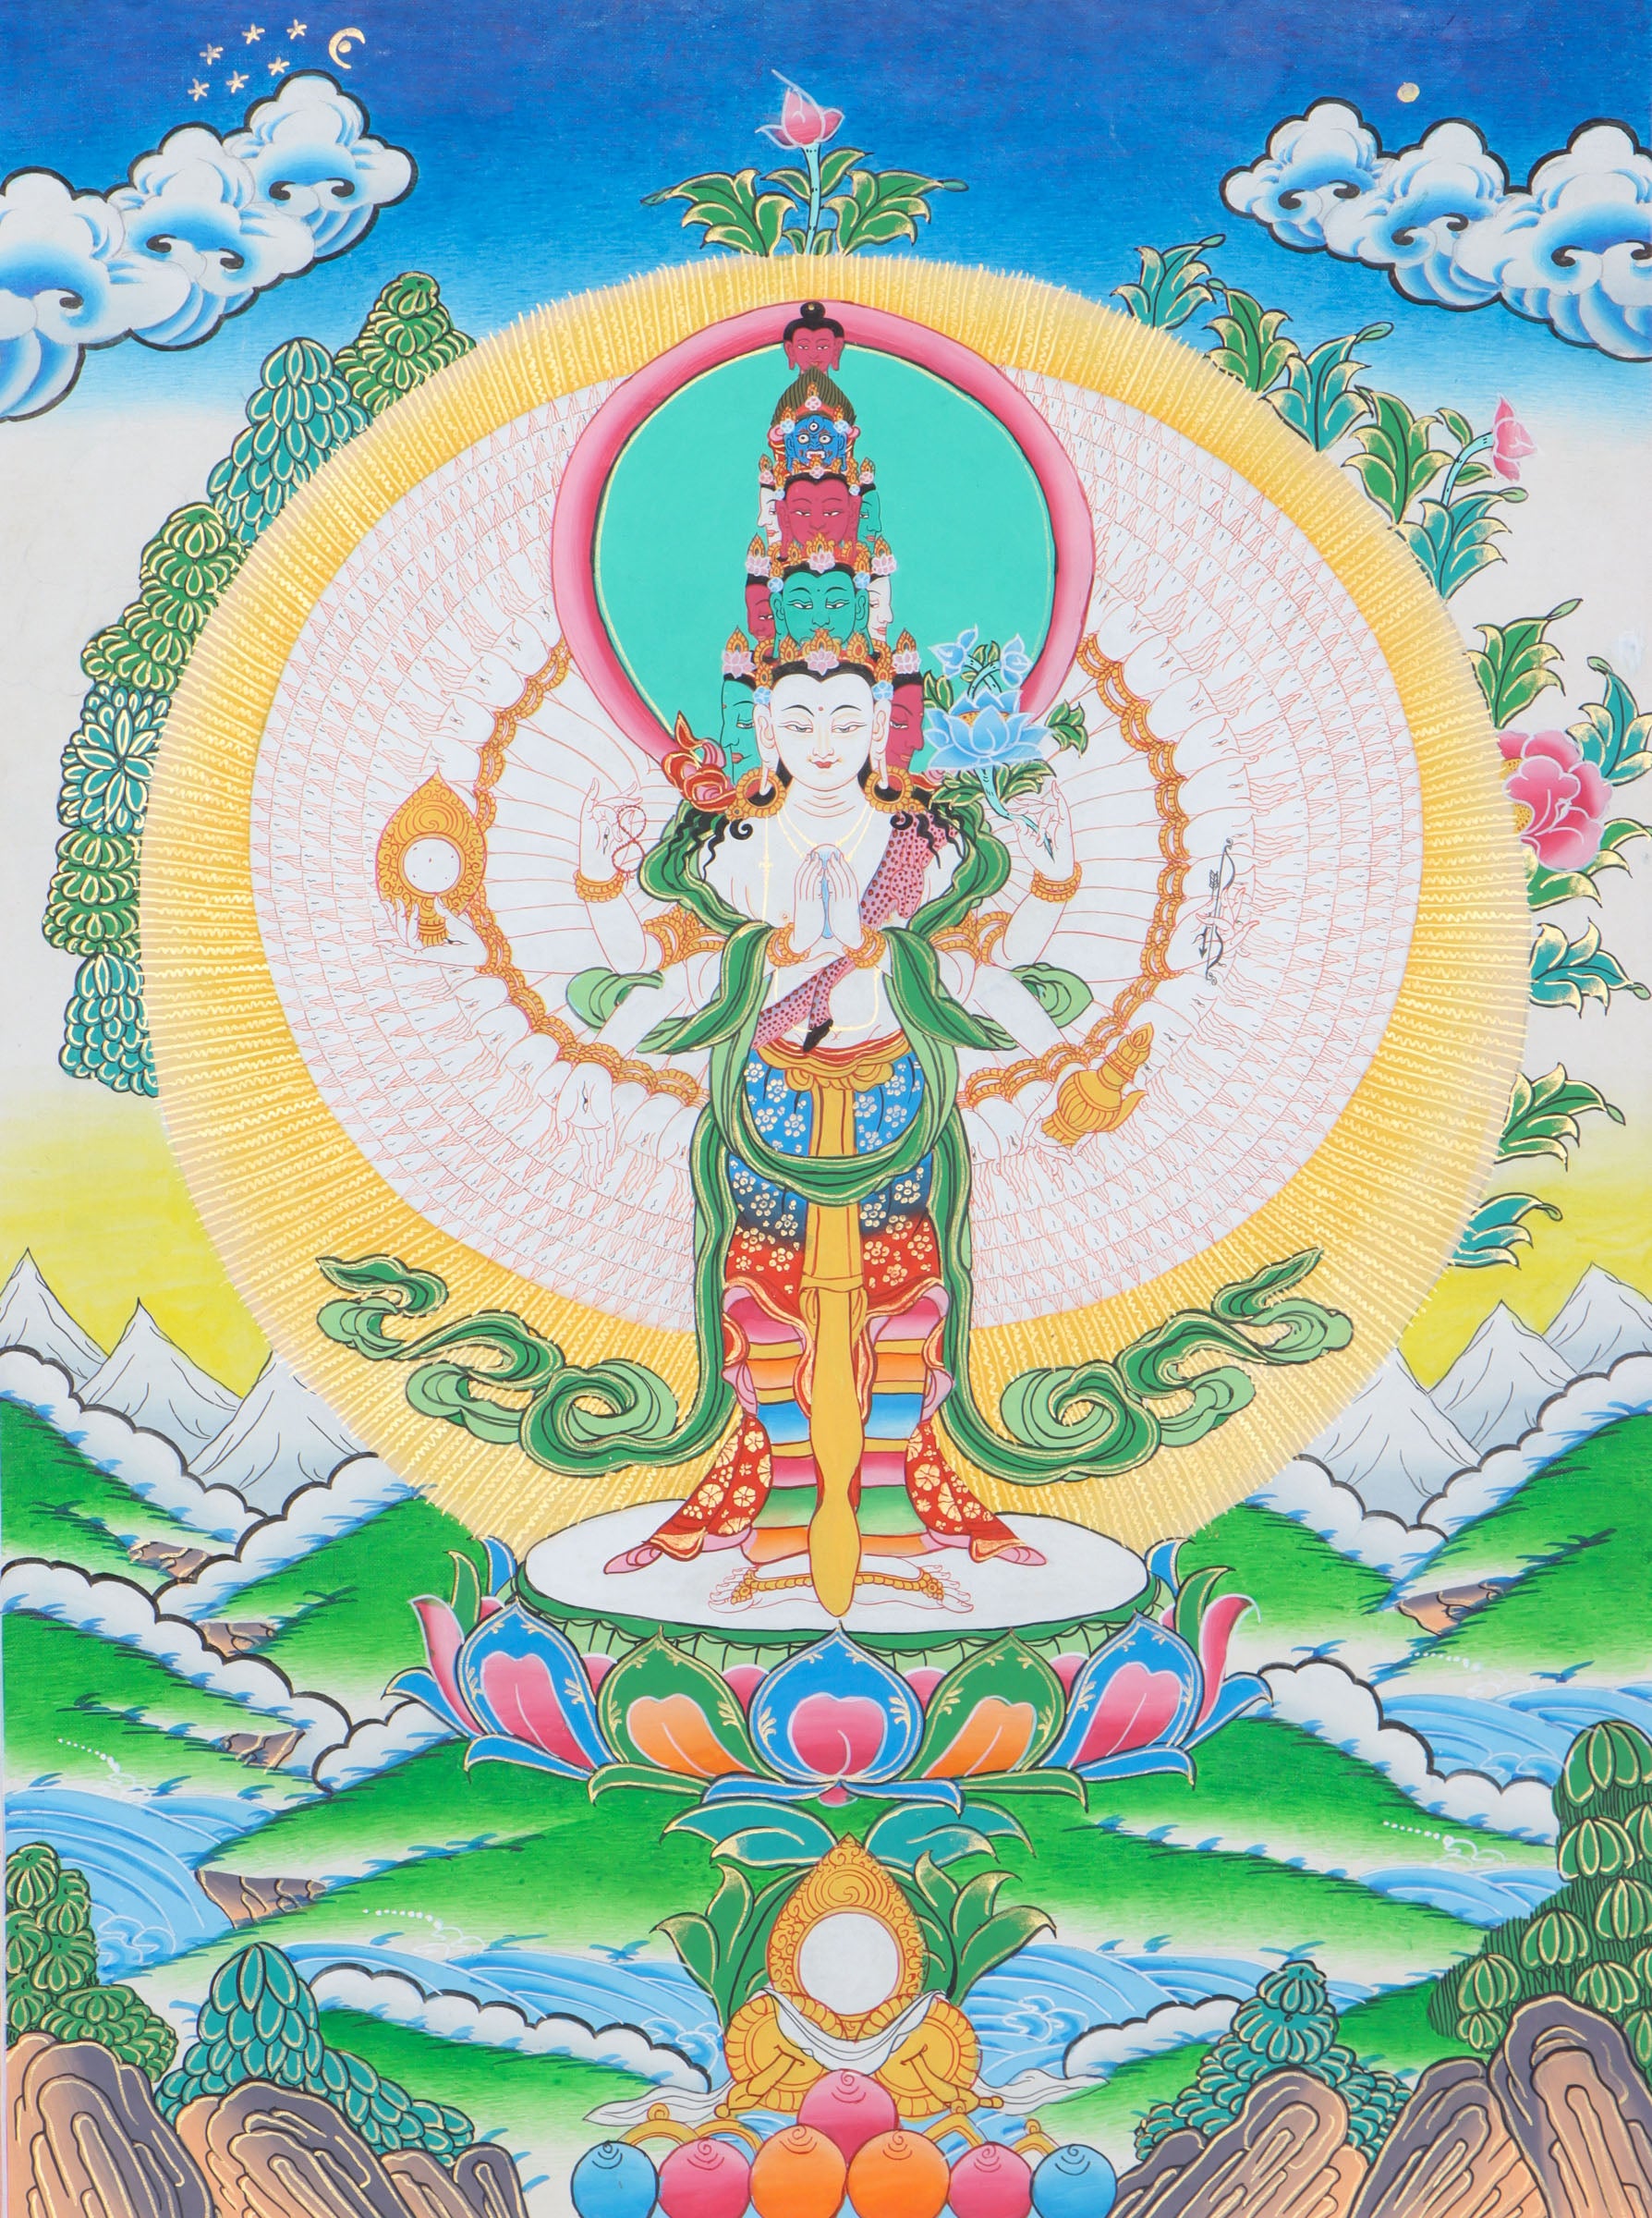 Lokeshwor Thangka provides spiritual guidance and protection.